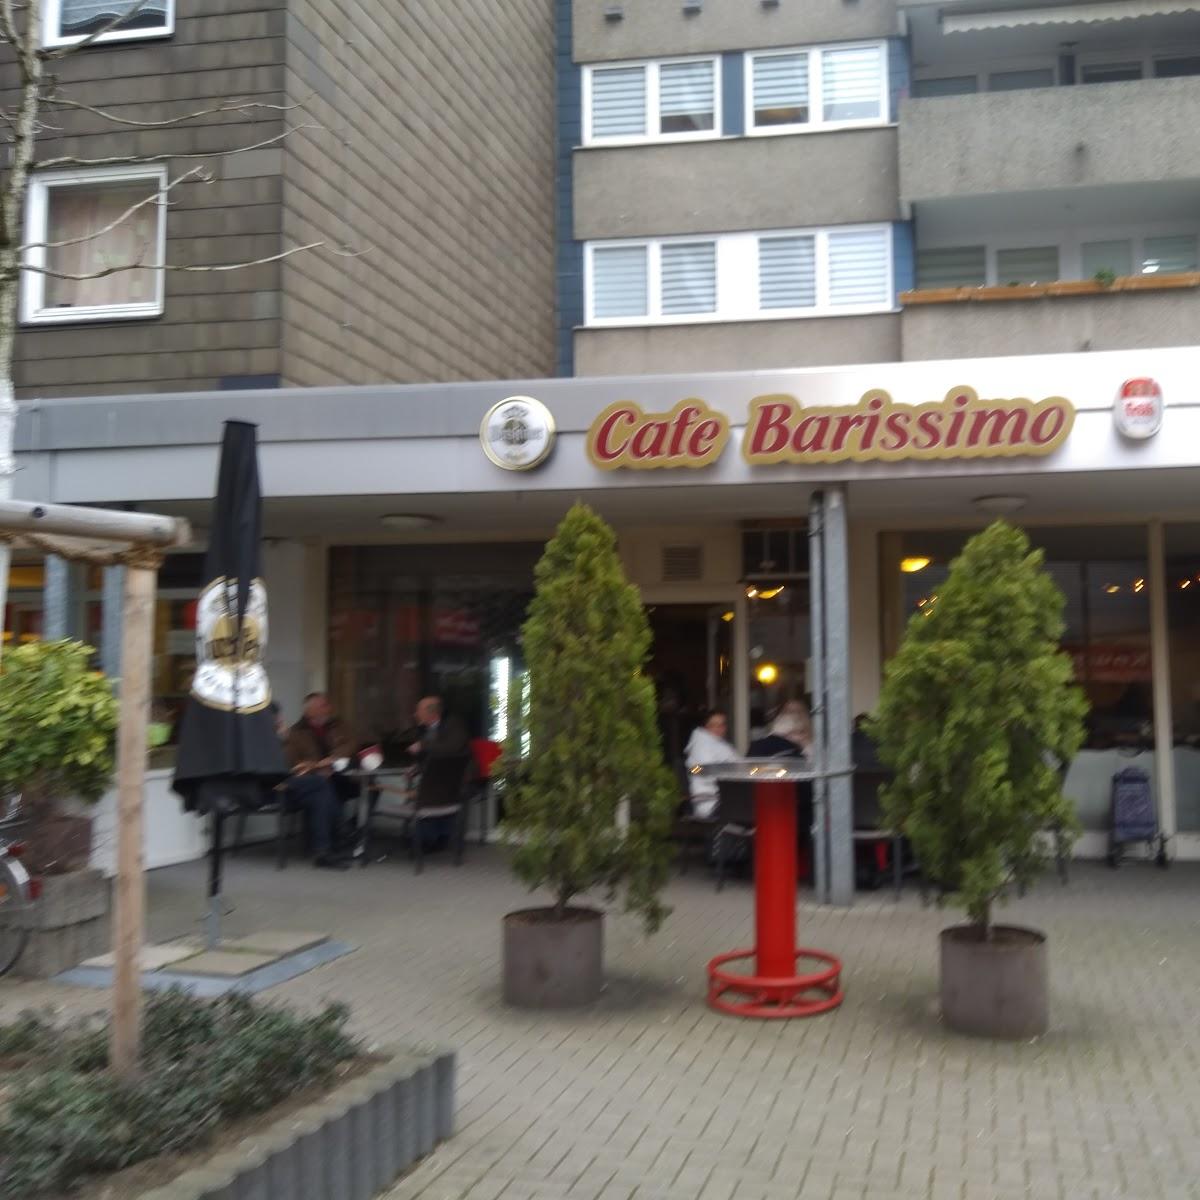 Restaurant "Cafe Barissimo" in Monheim am Rhein